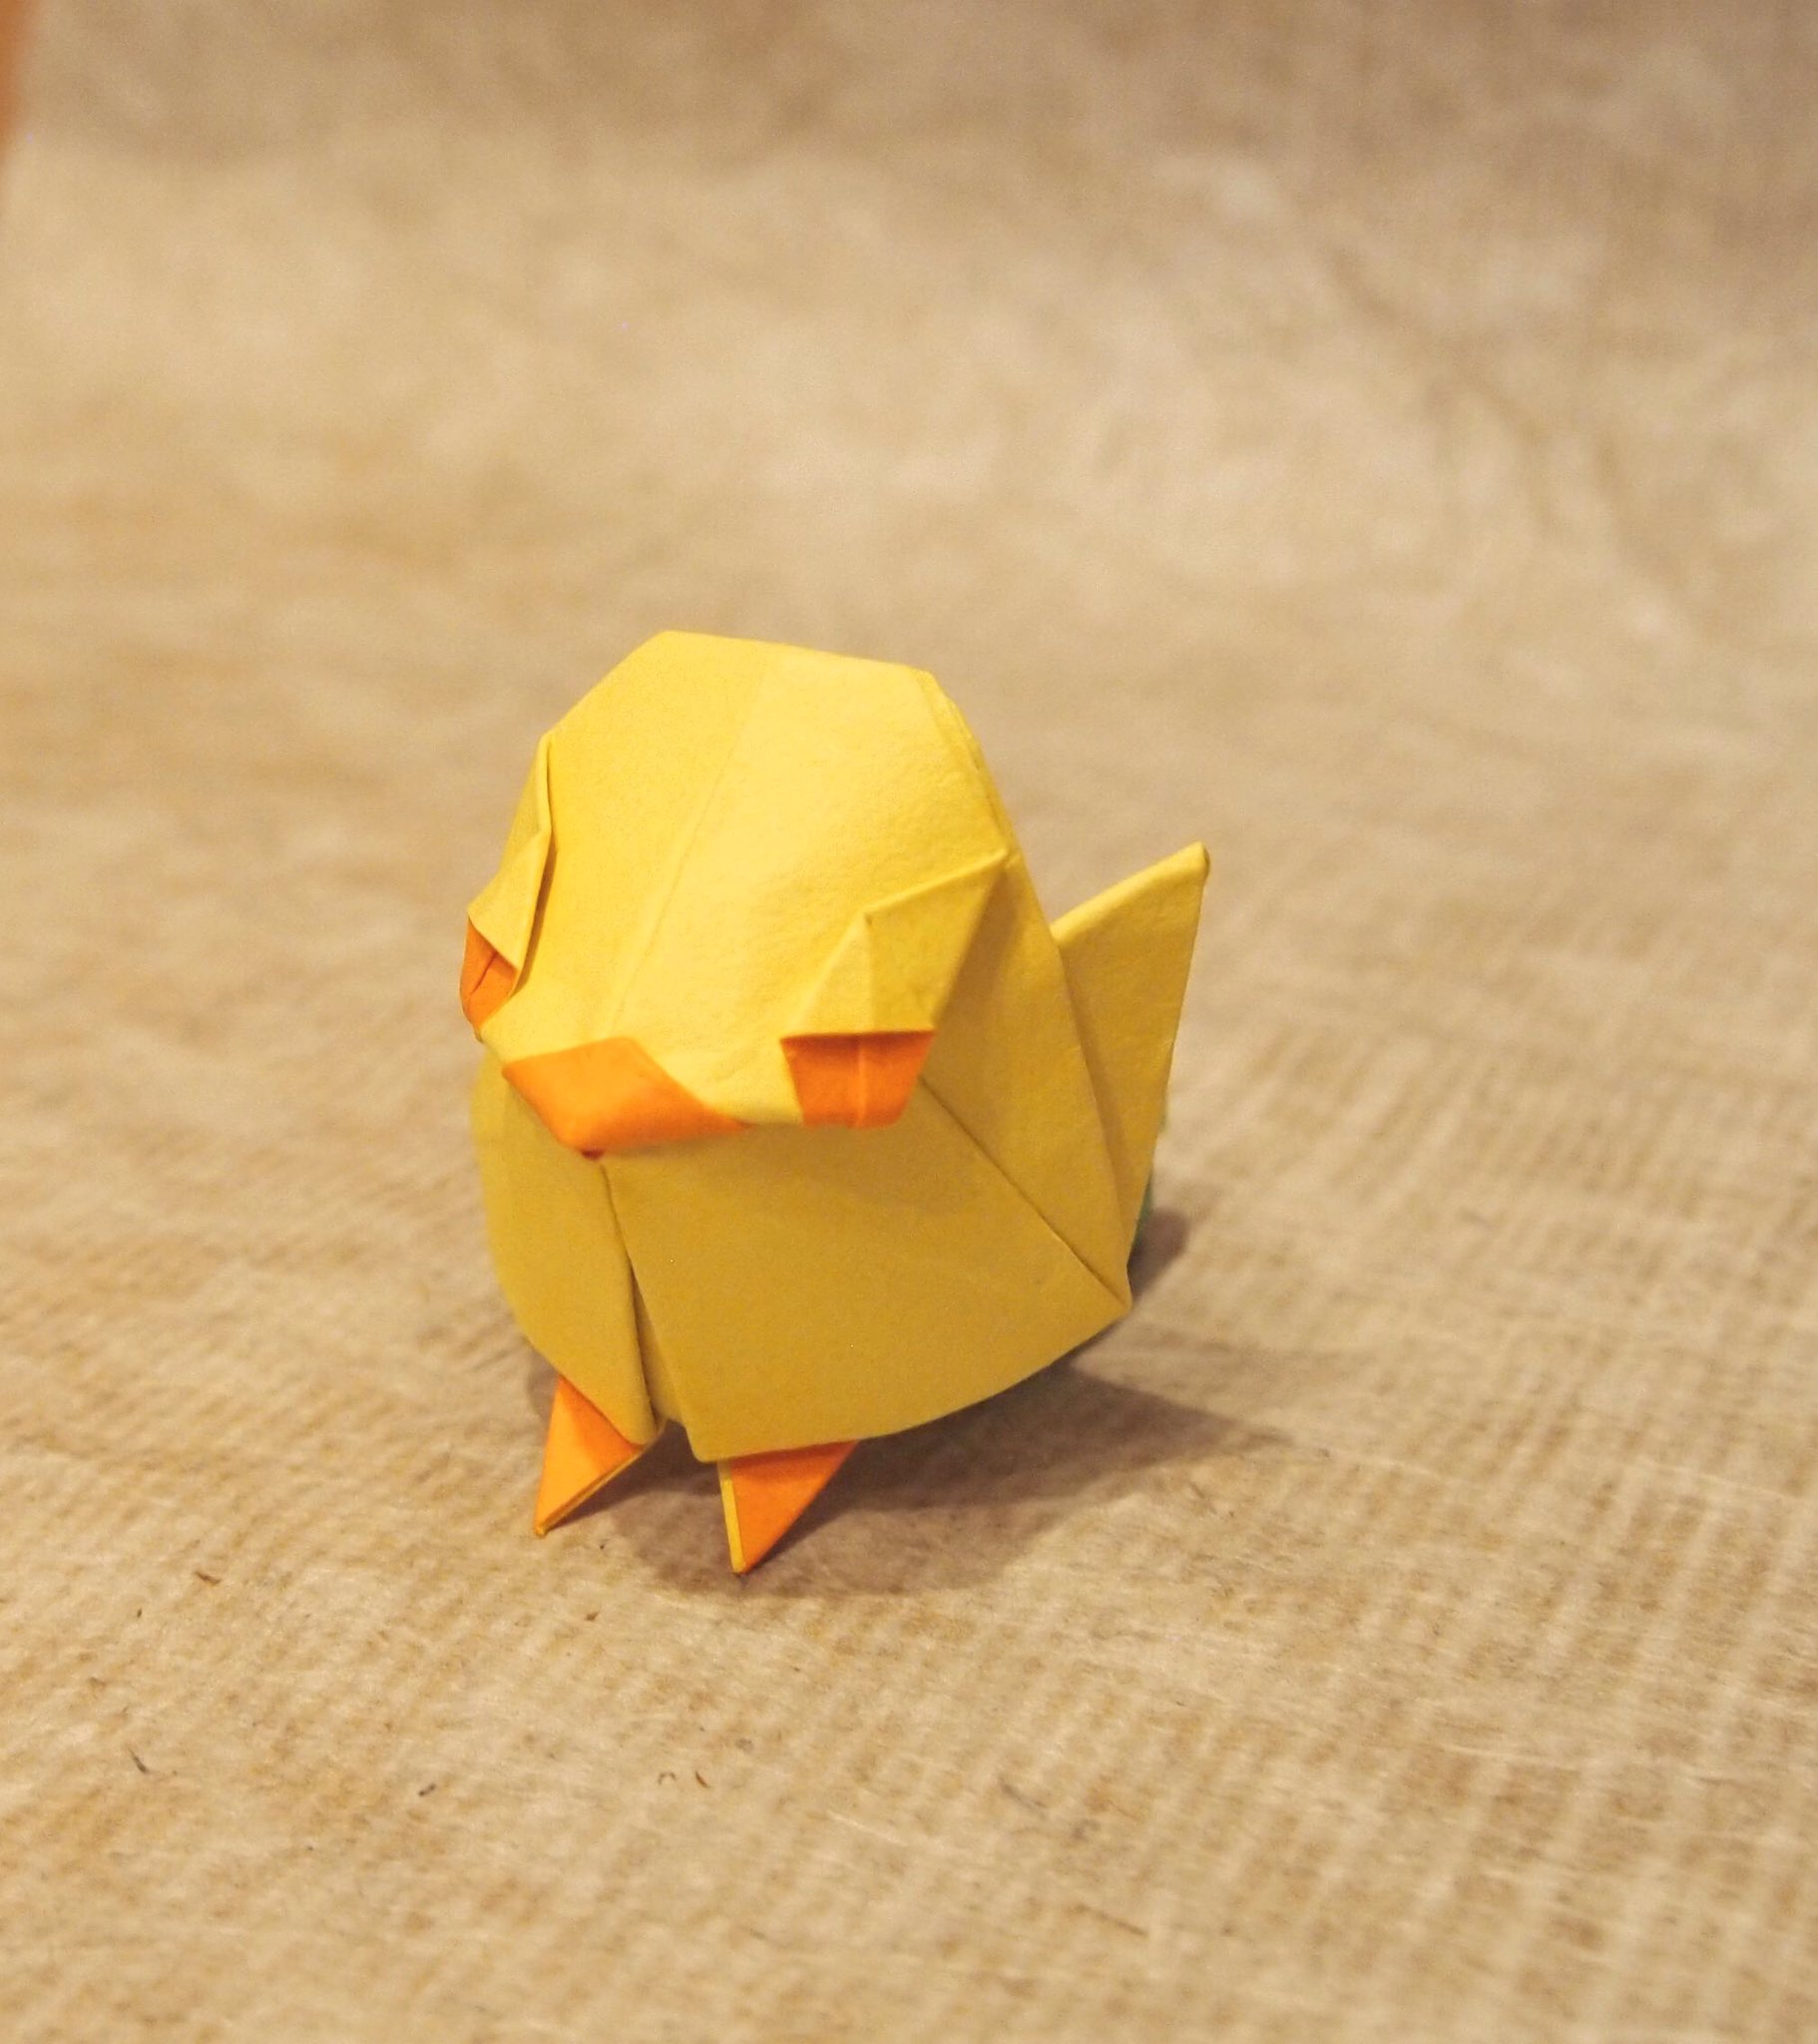 一匹柴犬 على تويتر 折り紙作品 ひよこ 創作 折り 一匹柴犬 数年前に折ったヒヨコが無理矢理仕上げであまり納得できてなかったので再トライ シンプルにかわいいデザインにできました 魚の基本的より Origami Chick 折り紙作品 折り紙 ひよこ T